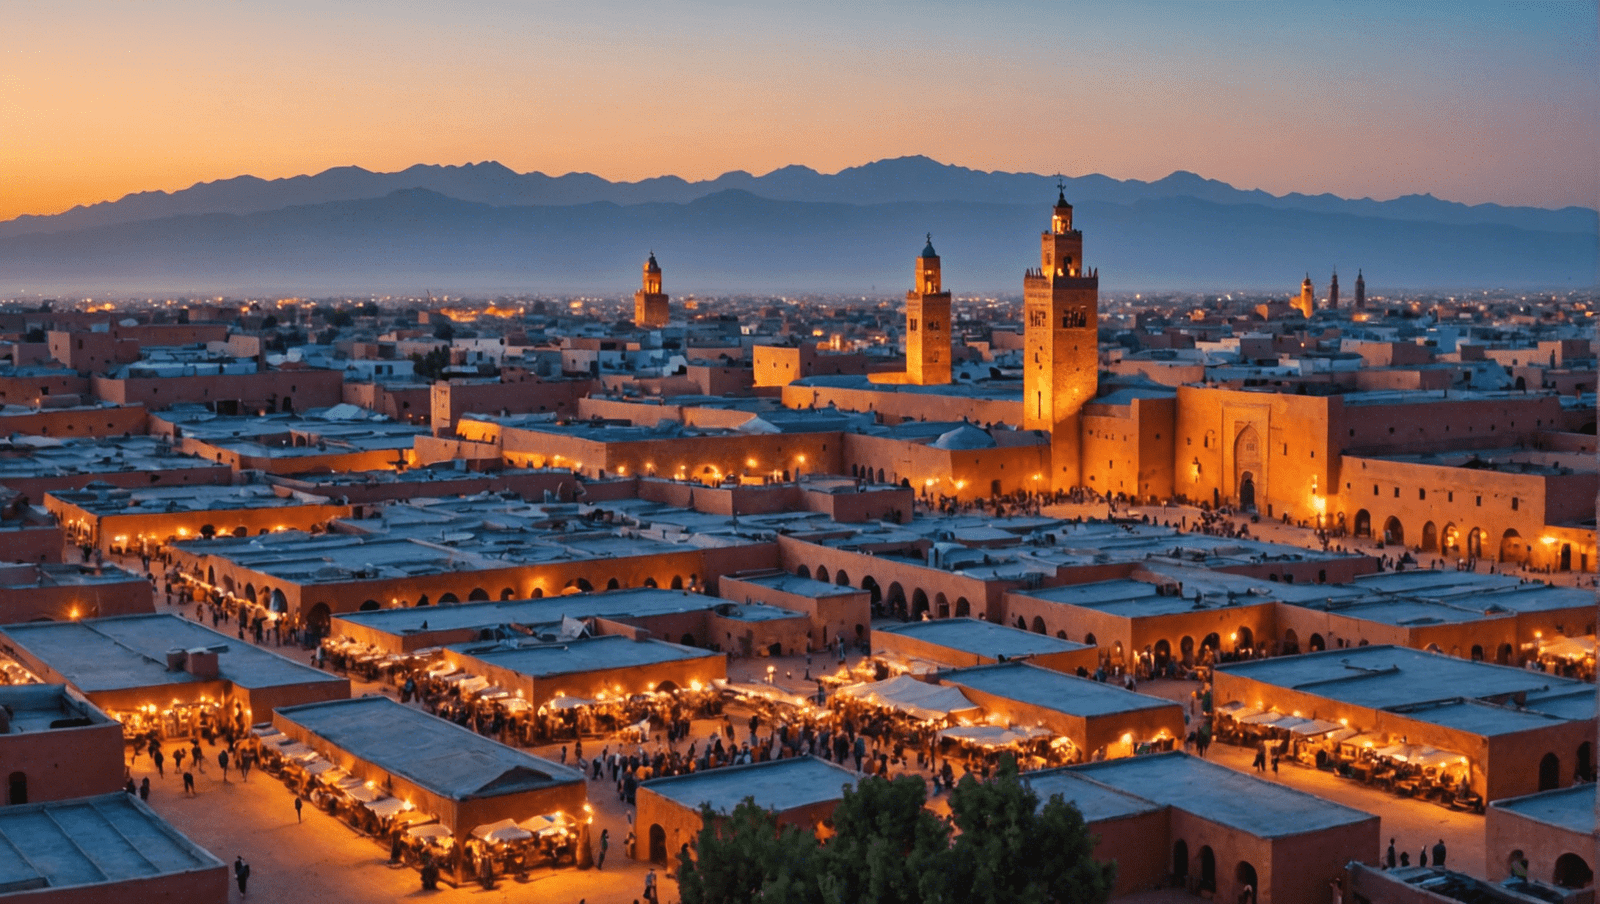 découvrez marrakech : guide de voyage et astuces - plongez dans la magie de marrakech, explorez ses merveilles, ses sites emblématiques et ses secrets grâce à notre guide complet et bénéficiez de précieuses astuces pour un séjour inoubliable.